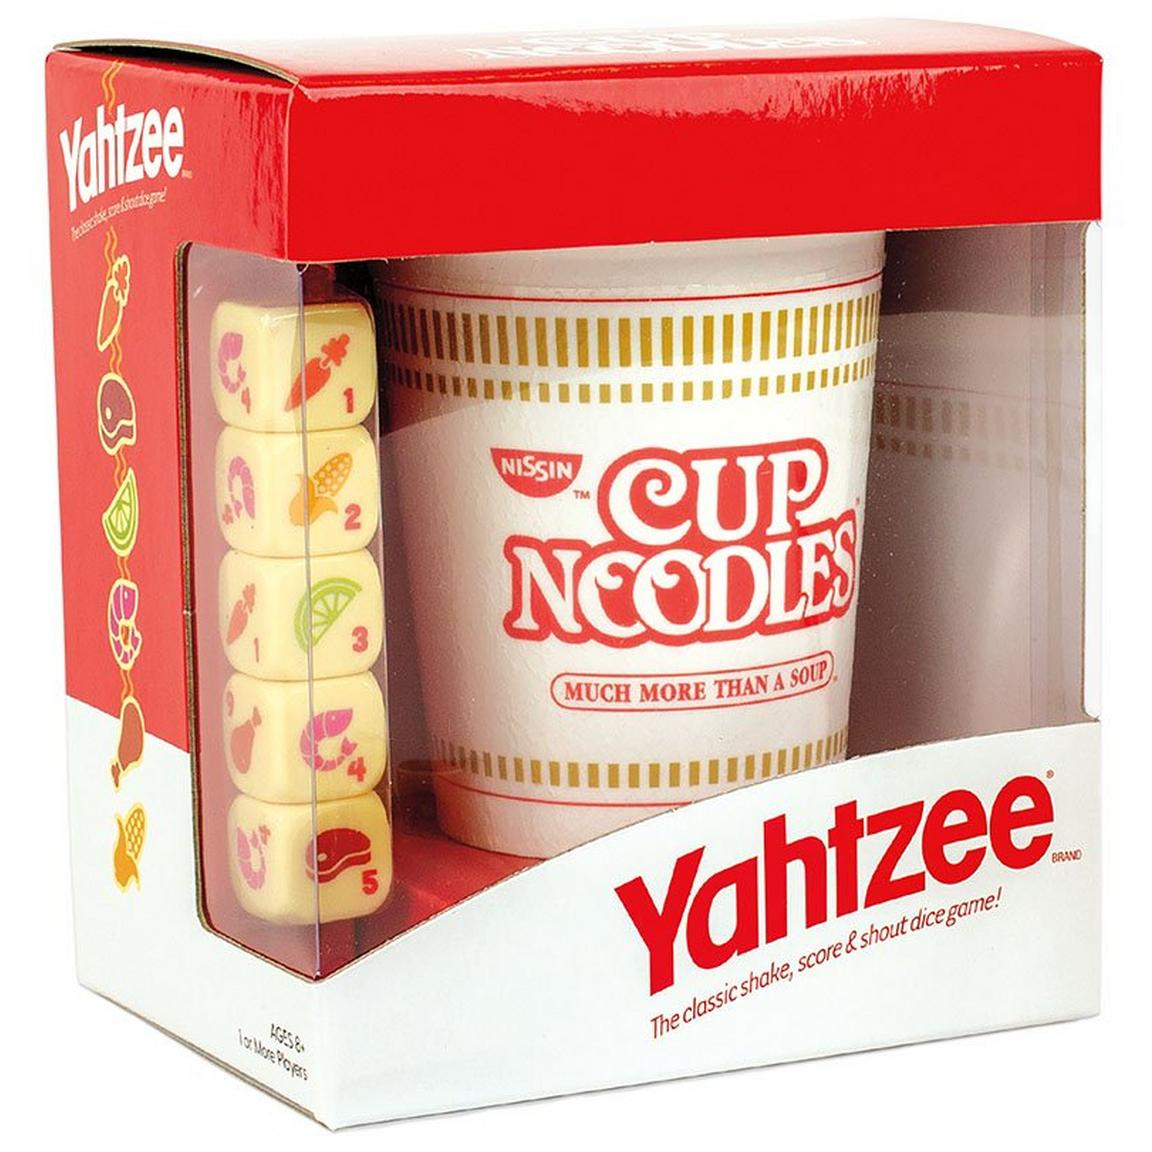 Yahtzee: Cup of Noodles